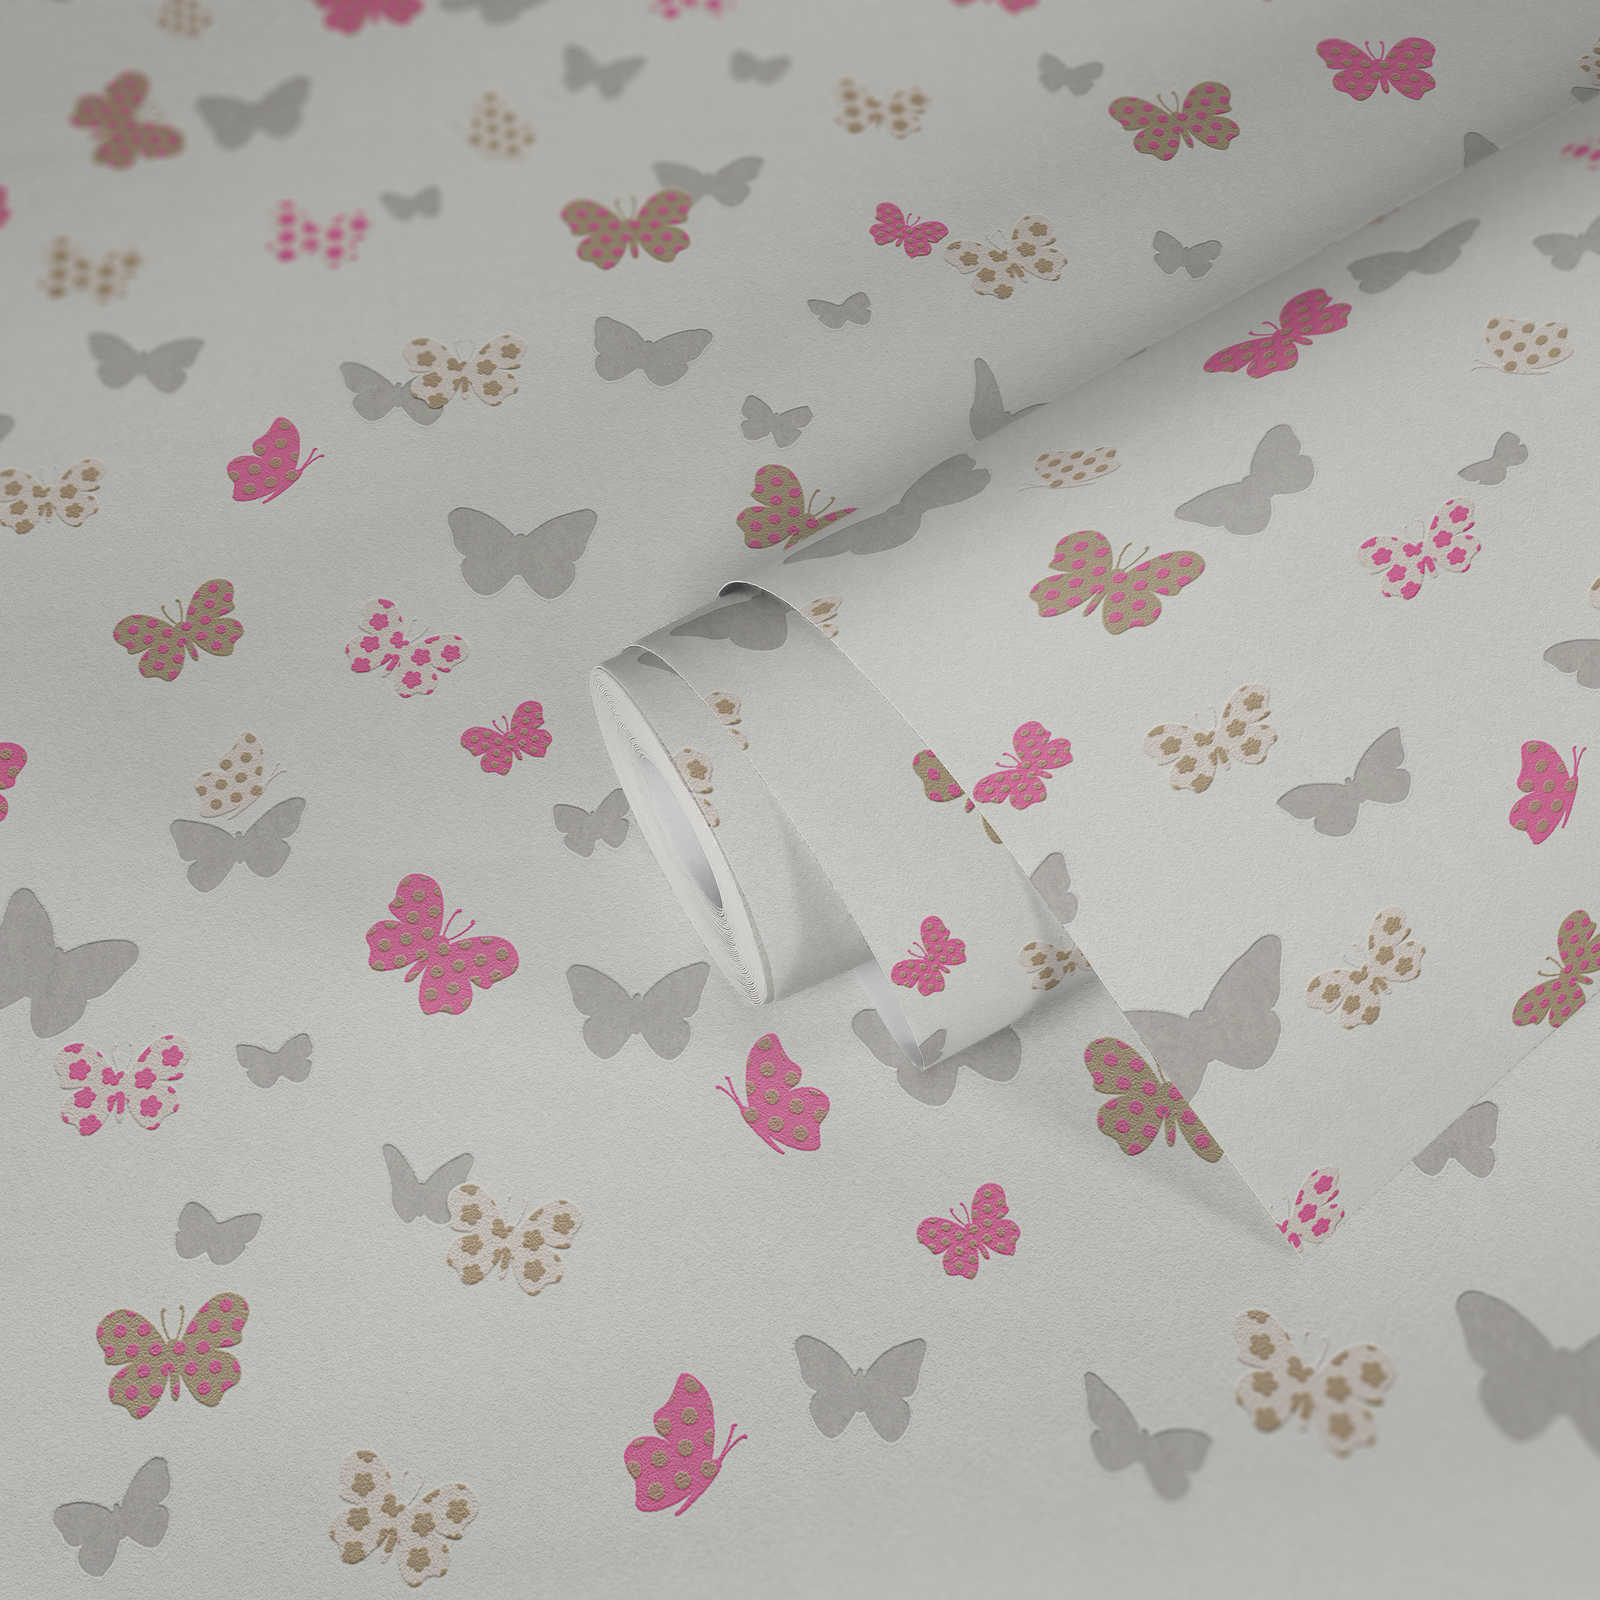             Vlinder & Metallic Kleuren Behang voor Meisjes - Wit, Roze
        